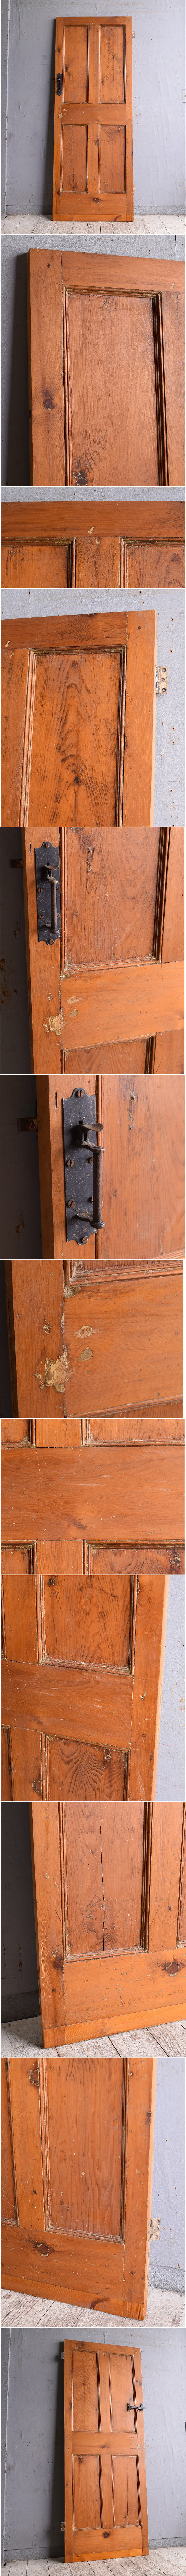 イギリス アンティーク オールドパイン ドア 扉 建具 10514